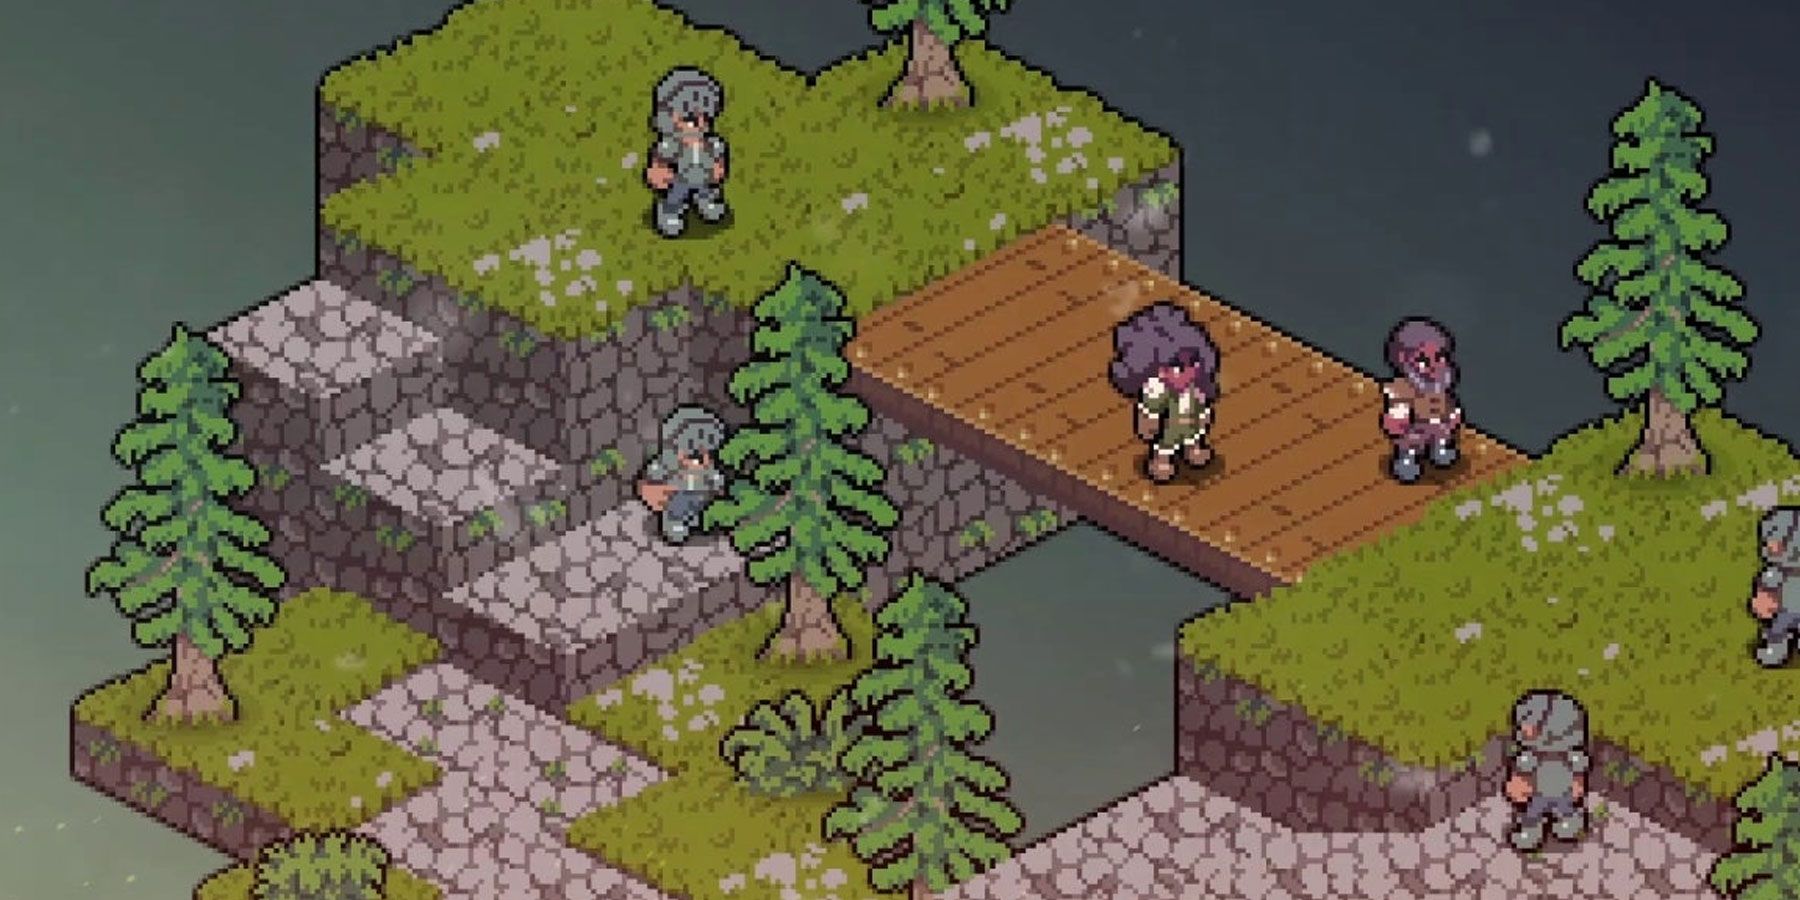 vanaris-tactics-video-game-pixel-characters-on-izometric-bridge-terrain